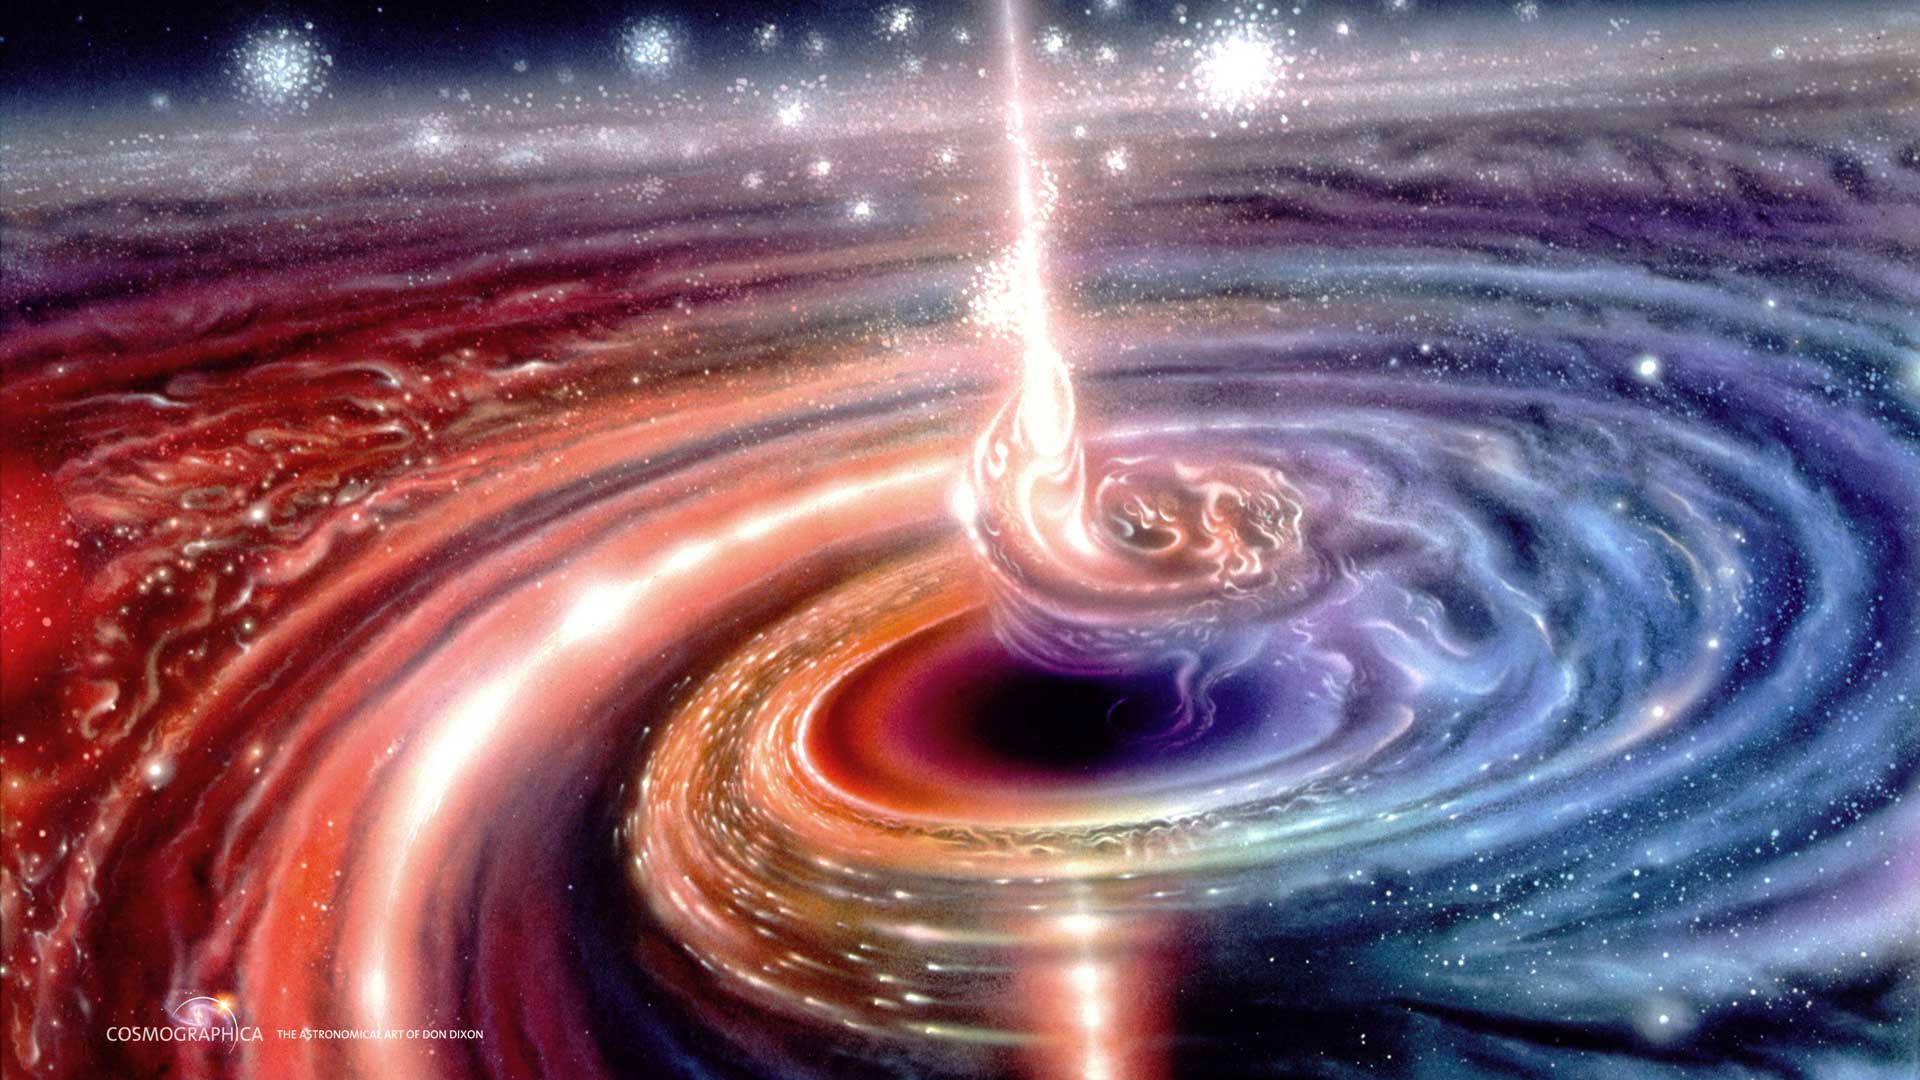 Hãy cùng chiêm ngưỡng hình ảnh đầy bí ẩn của vật thể quasar nằm ở trung tâm thiên hà - một điểm đen lộng lẫy giữa đại dương vũ trụ. Sự kì diệu và huyền bí của nó sẽ khiến bạn trầm trồ.